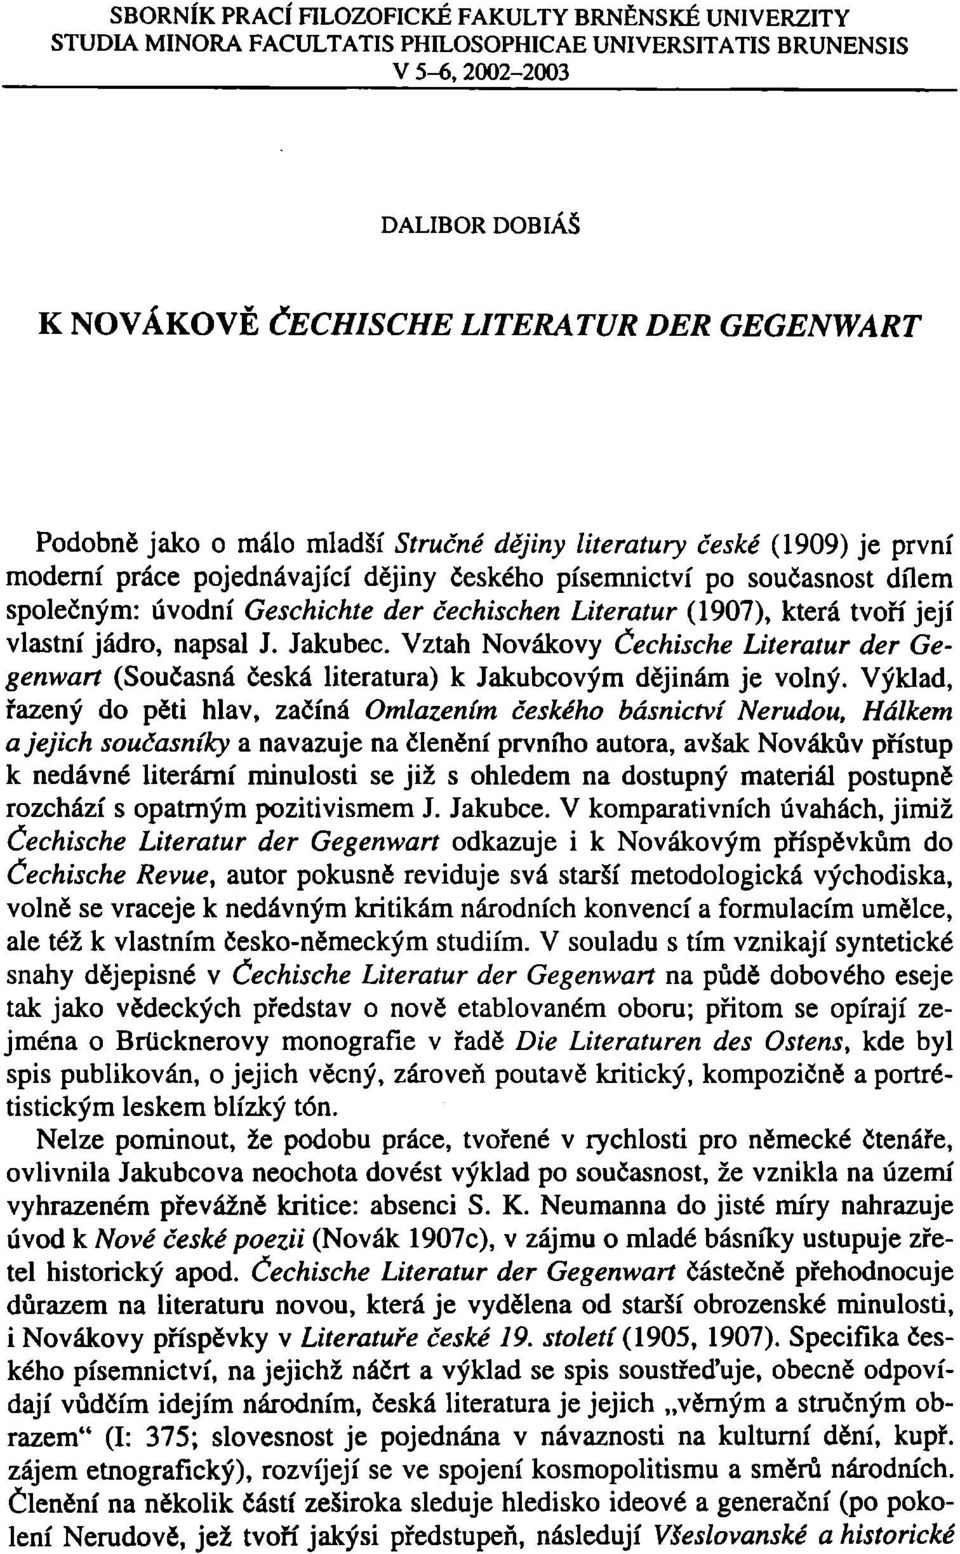 Literatur (1907), která tvoří její vlastní jádro, napsal J. Jakubec. Vztah Novákovy Čechische Literatur der Gegenwart (Současná česká literatura) k Jakubcovým dějinám je volný.